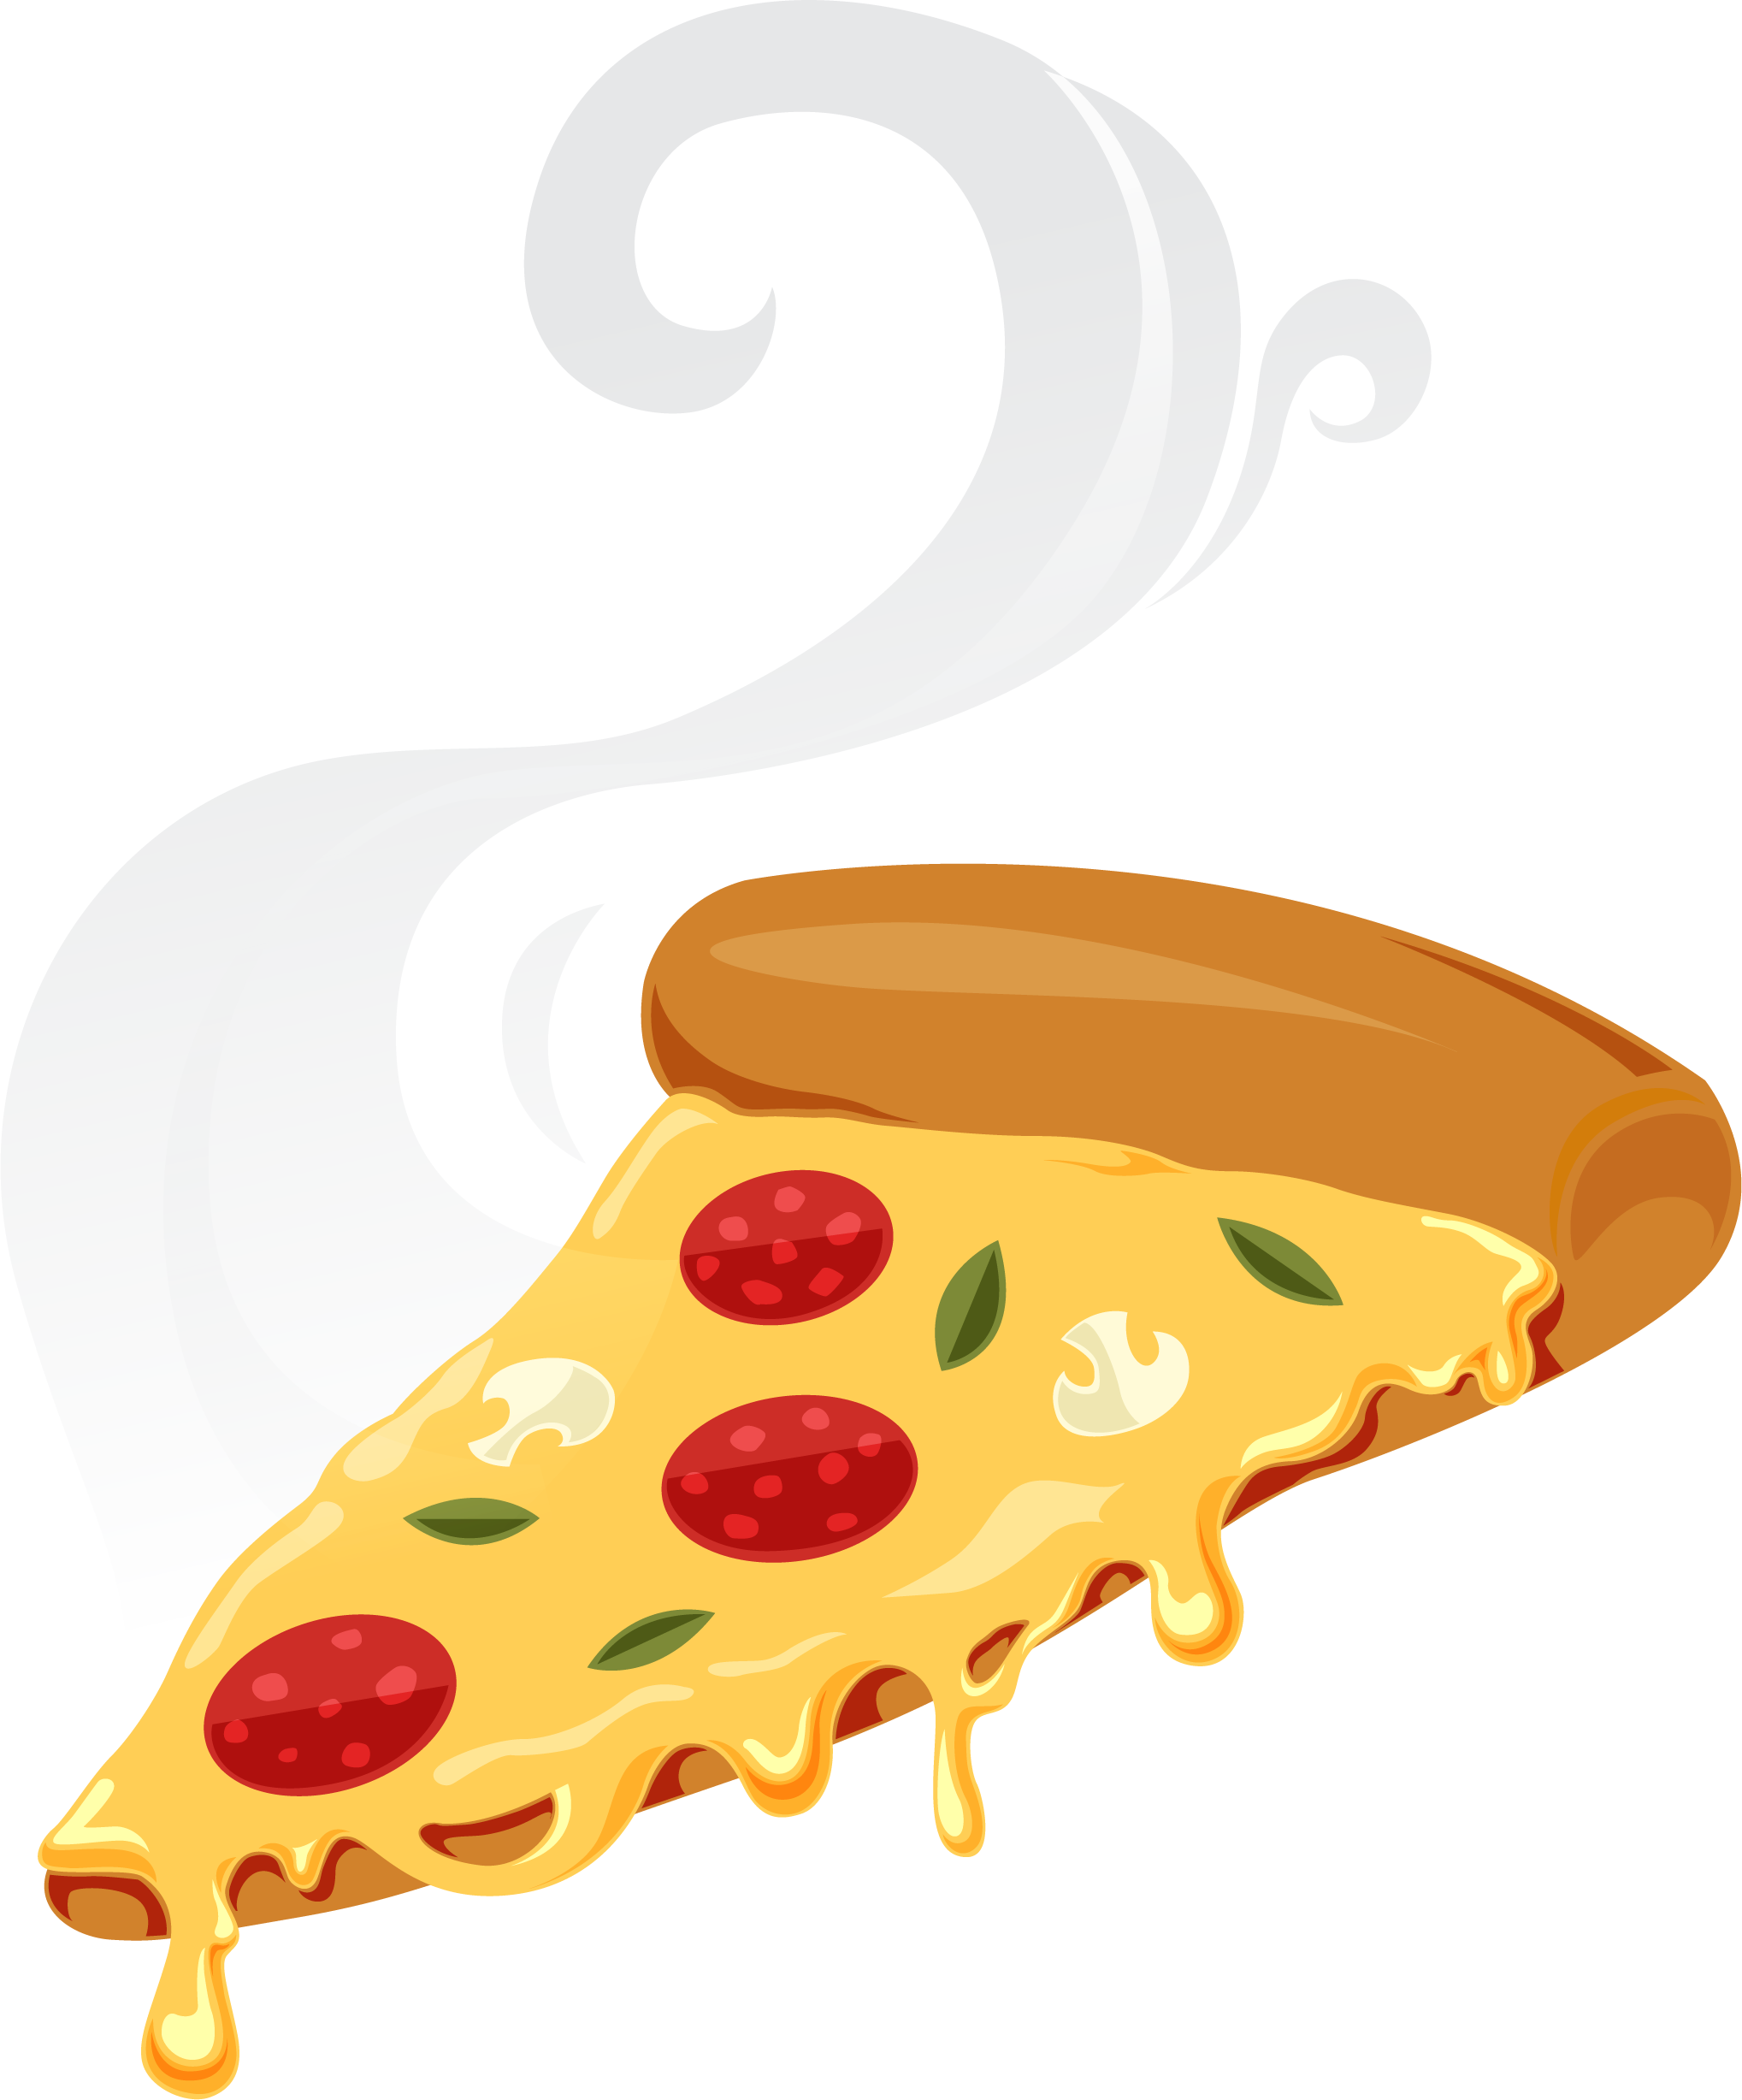 Pizza Cheese Food Kfc - Pizza Cheese Food Kfc (2037x2455)